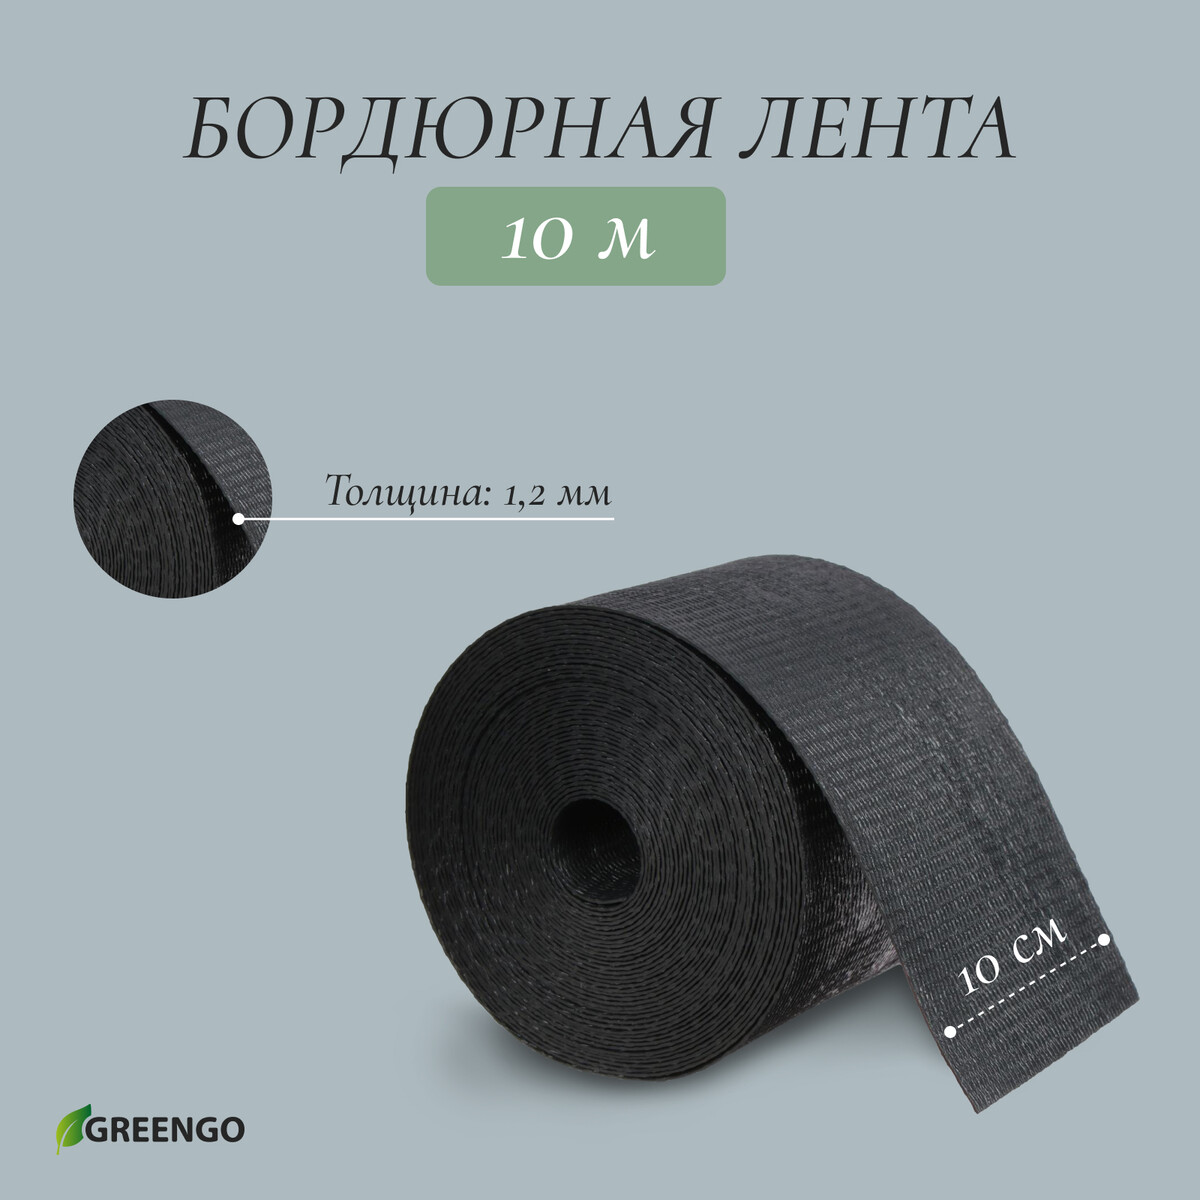 Лента бордюрная, 0,1 × 10 м, толщина 1,2 мм, пластиковая, черная, greengo лента бордюрная 0 1 × 10 м толщина 1 2 мм пластиковая коричневая greengo